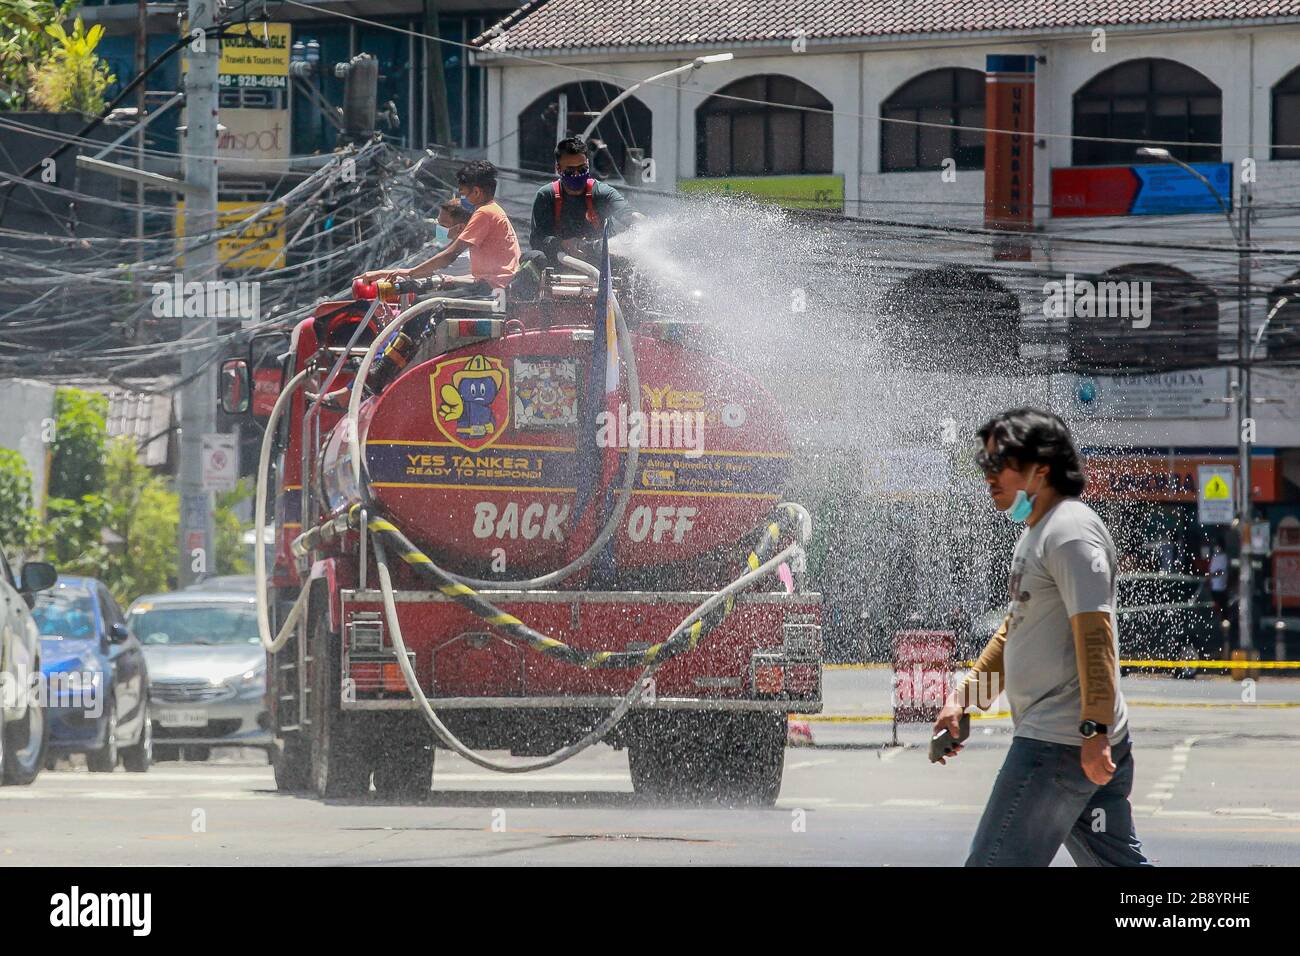 Quezon City, Philippinen. März 2020. Feuerwehrleute sprühen auf einer Straße in Quezon City, Philippinen, am 23. März 2020 Desinfektionsmittel auf einen Feuerwehrwagen. Die Zahl der COVID-19-Fälle auf den Philippinen ist auf 462 gestiegen, sagte das Gesundheitsministerium des Landes (DOH) am Montag. Der DOH sagte in einem Bericht, dass 33 Menschen an der hochinfektiösen Krankheit gestorben seien, während 18 sich erholt hätten. Credit: Rouelle Umali/Xinhua/Alamy Live News Stockfoto